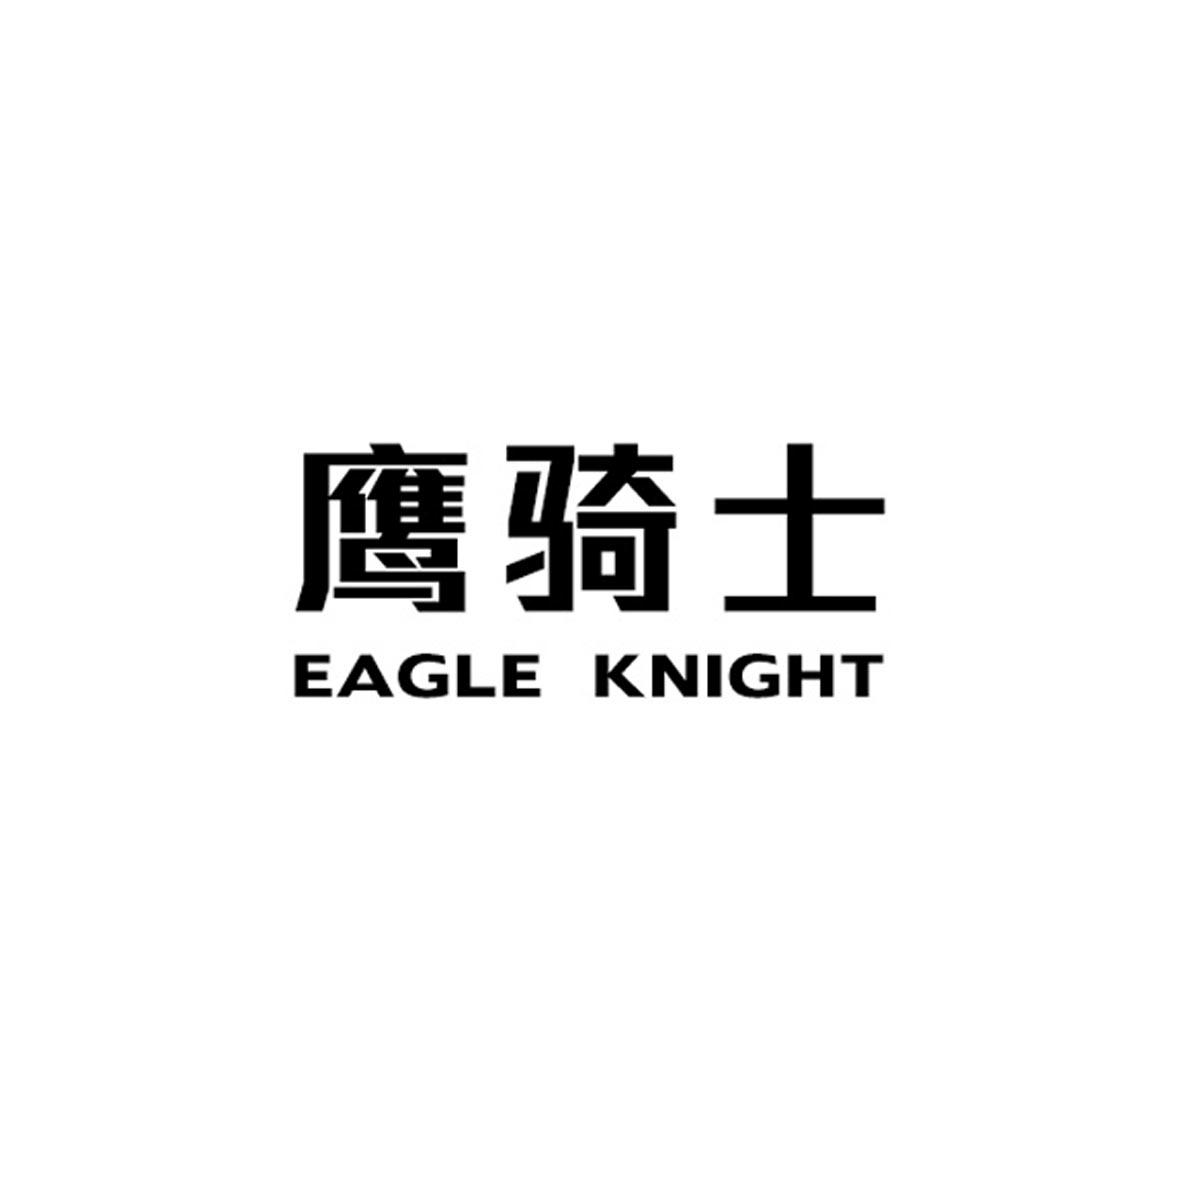 鹰骑士 EAGLE KNIGHT